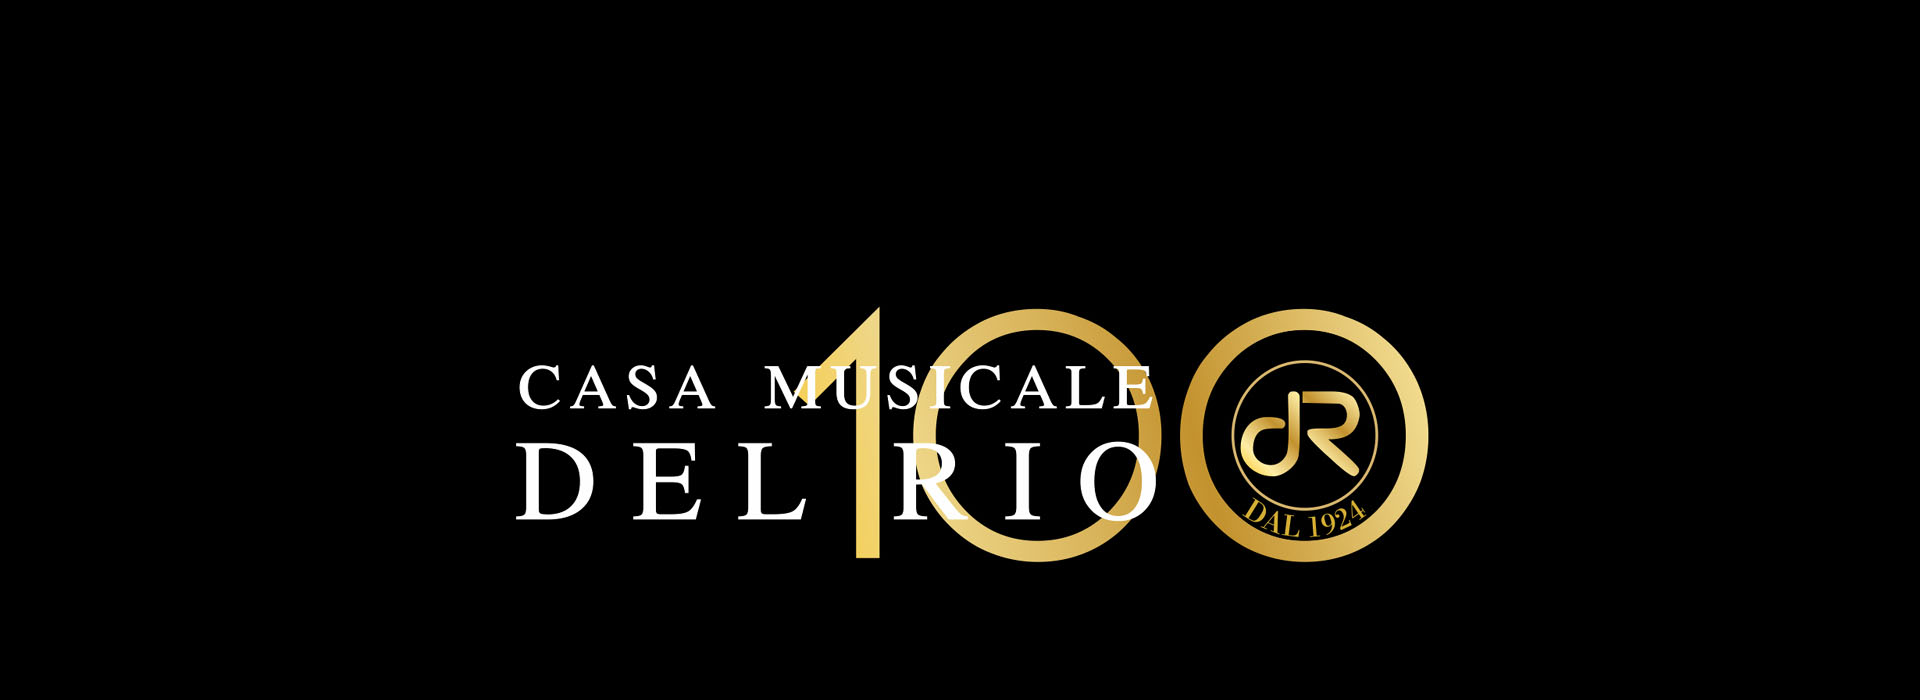 Casa musicale Del Rio